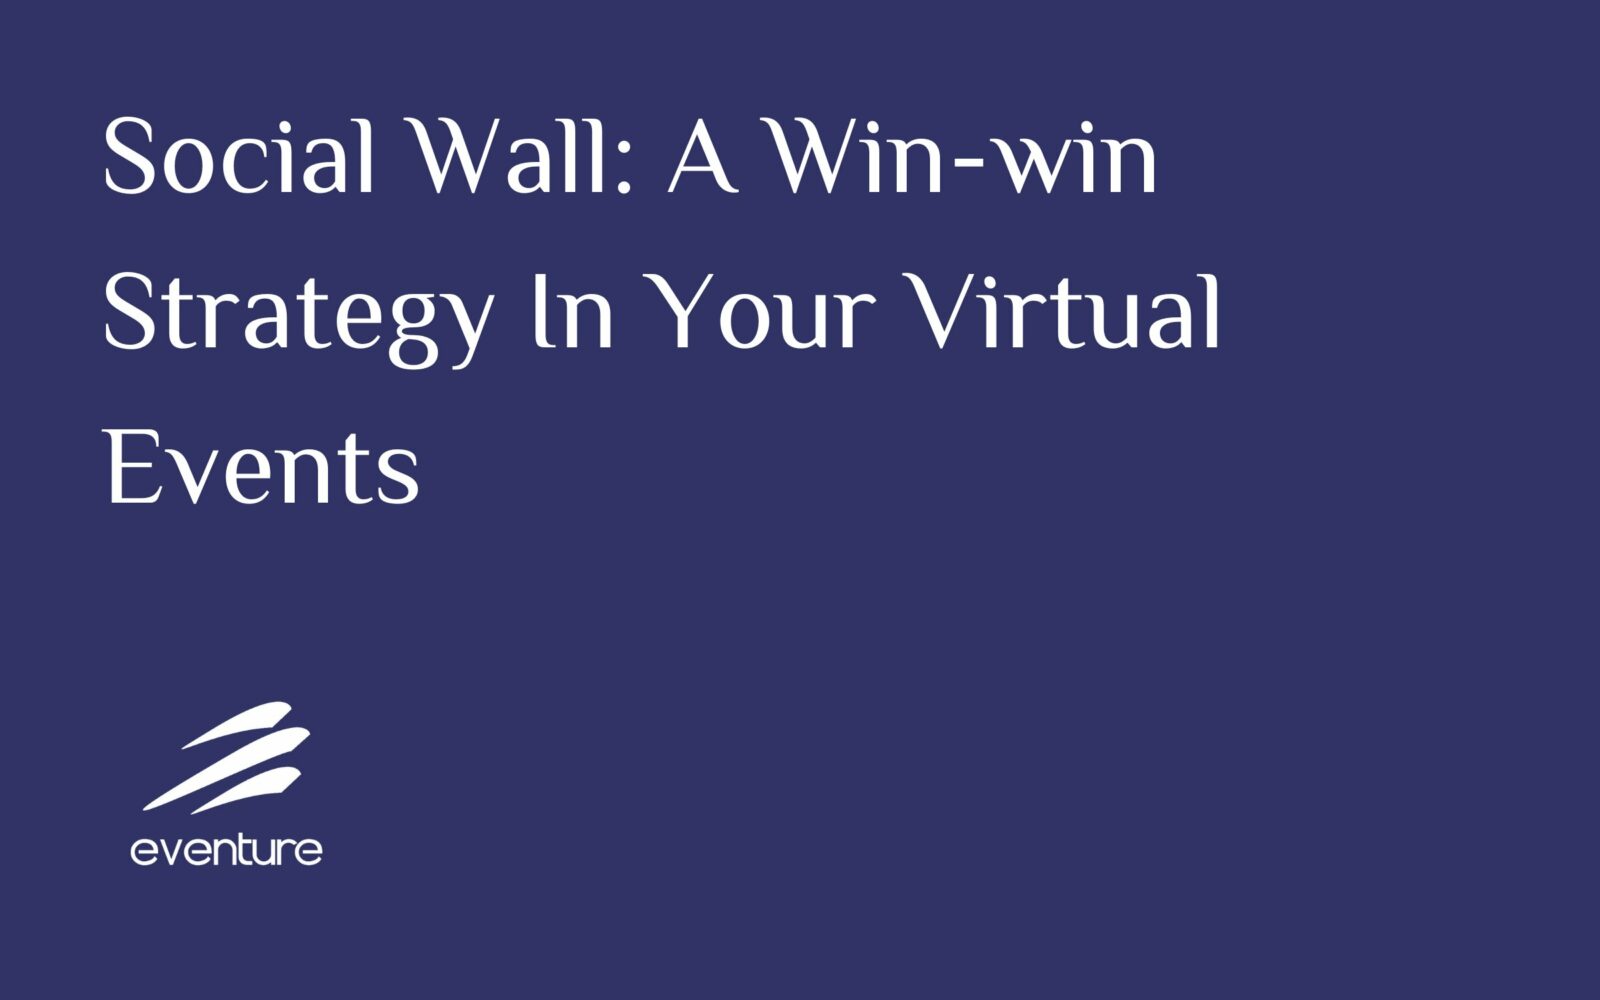 Una organización ganadora en sus eventos virtuales